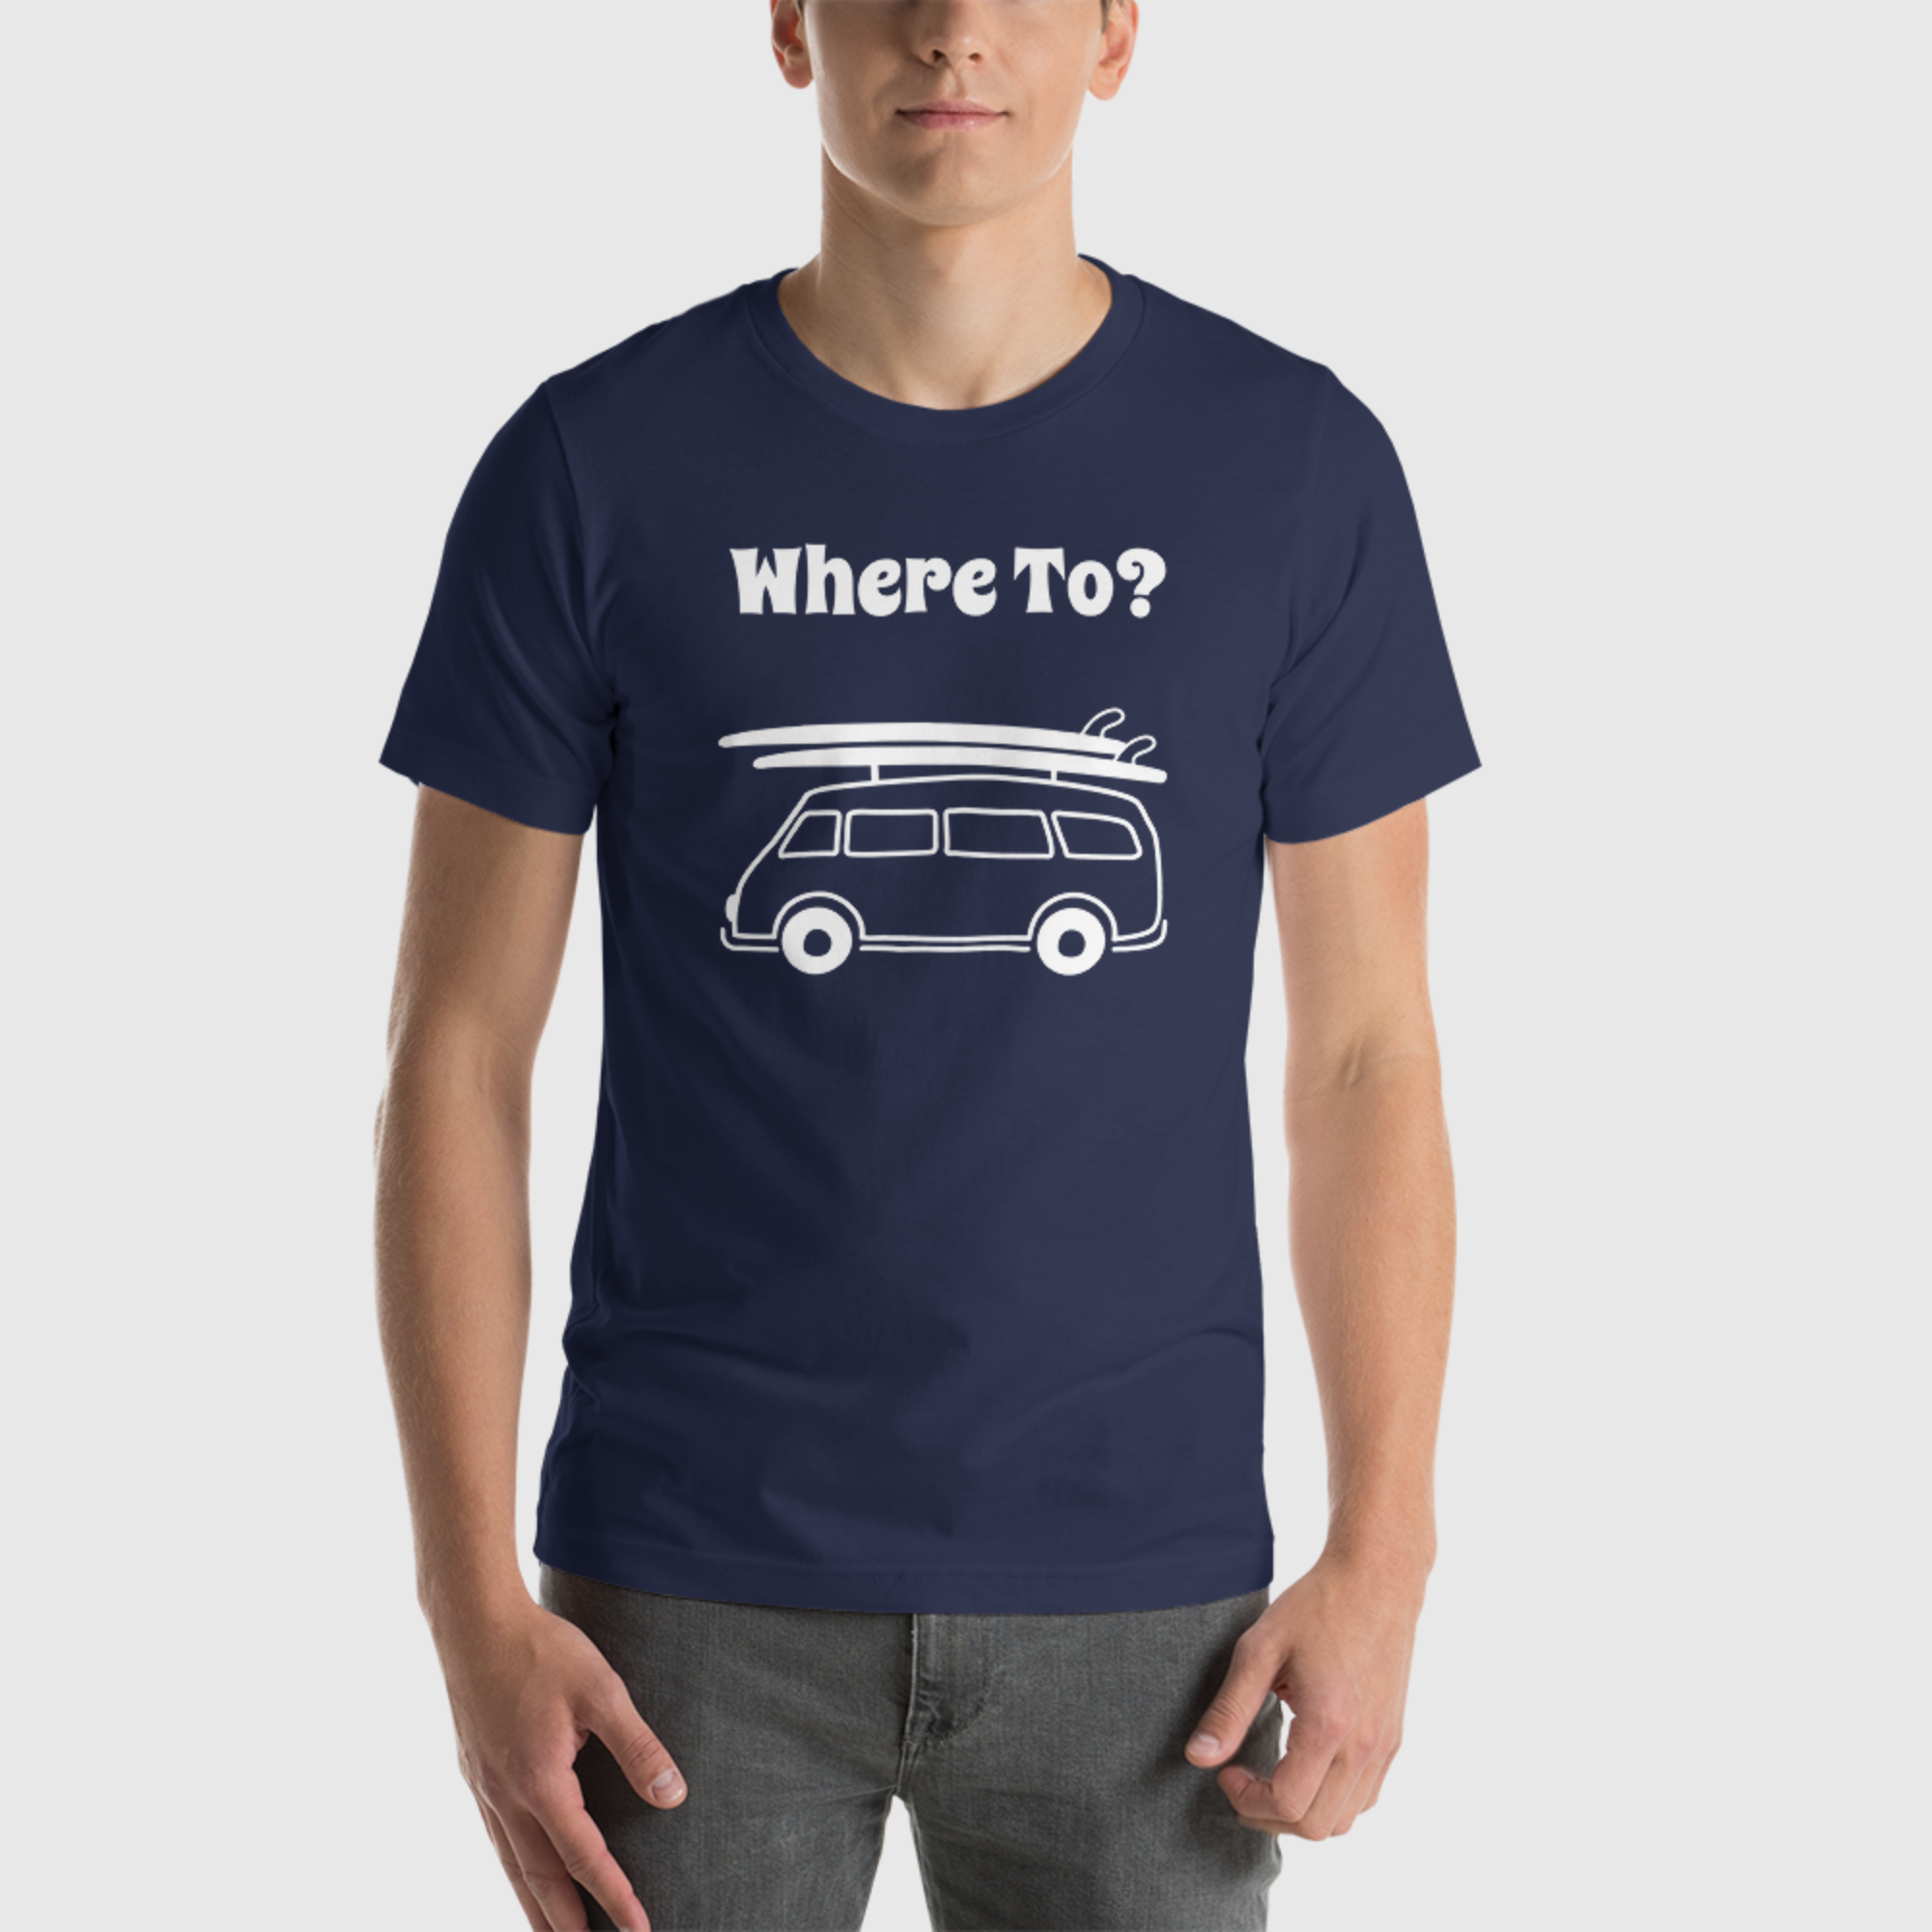 Camiseta básica unisex - ¿Hacia dónde?